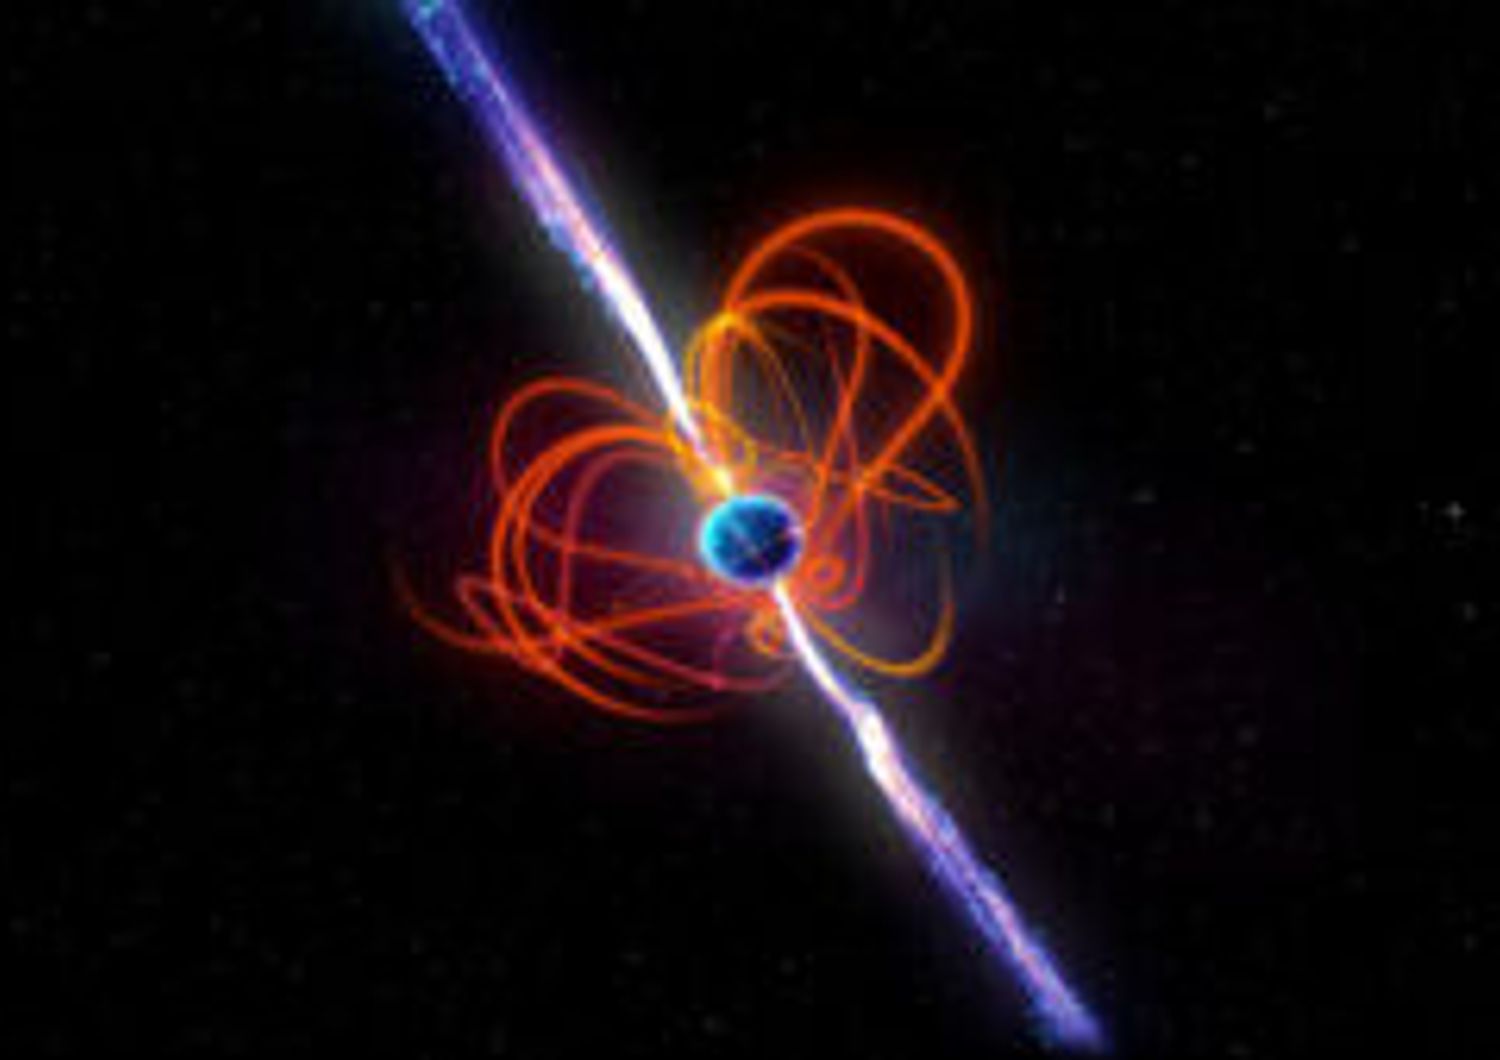 Un disegno del magnetar a periodo ultra-lungo. L'oggetto ha emesso un impulso di cinque minuti di energia a lunghezza d'onda radio per almeno gli ultimi 33 anni